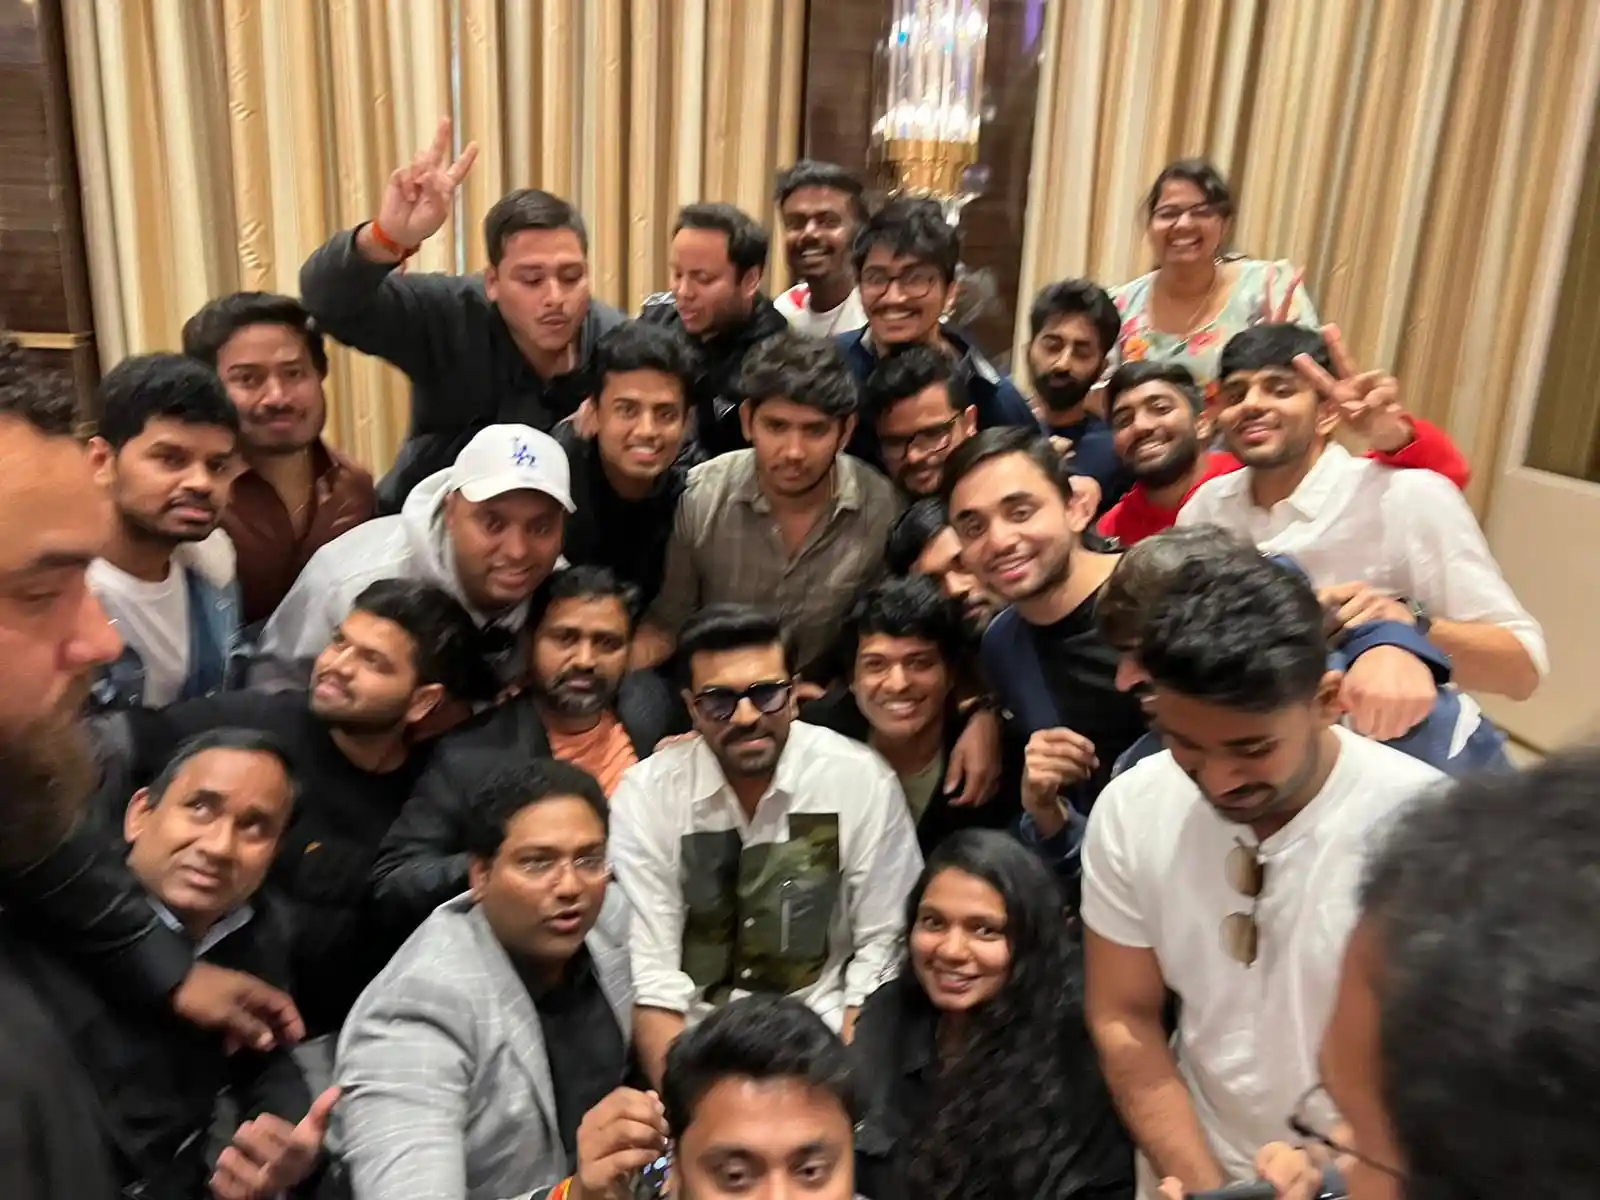 Ram Charan Fans Meet at Los Angeles 